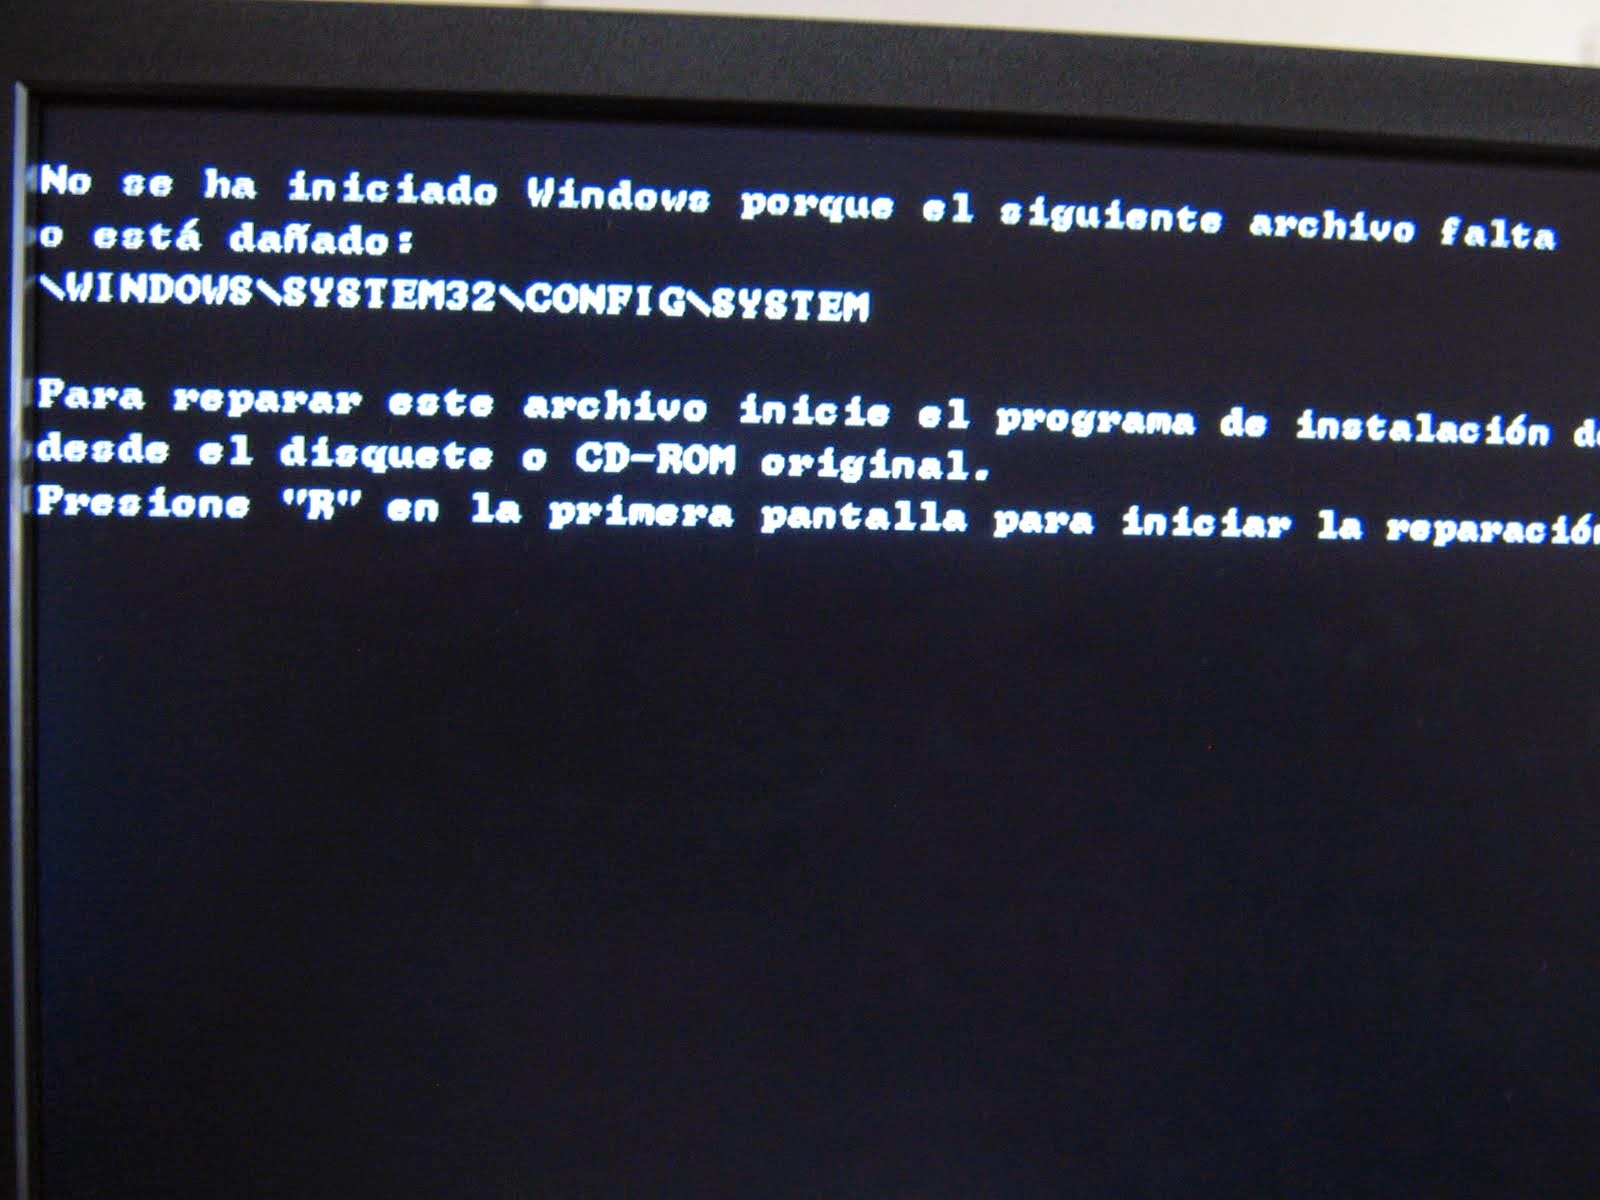 Error code 32. Windows XP system32 config System. Файл Windows system32 config System не удалось запустить виндовс 7. Ошибка 32 виндовс. Windows/system32/config/System как восстановить ошибку.